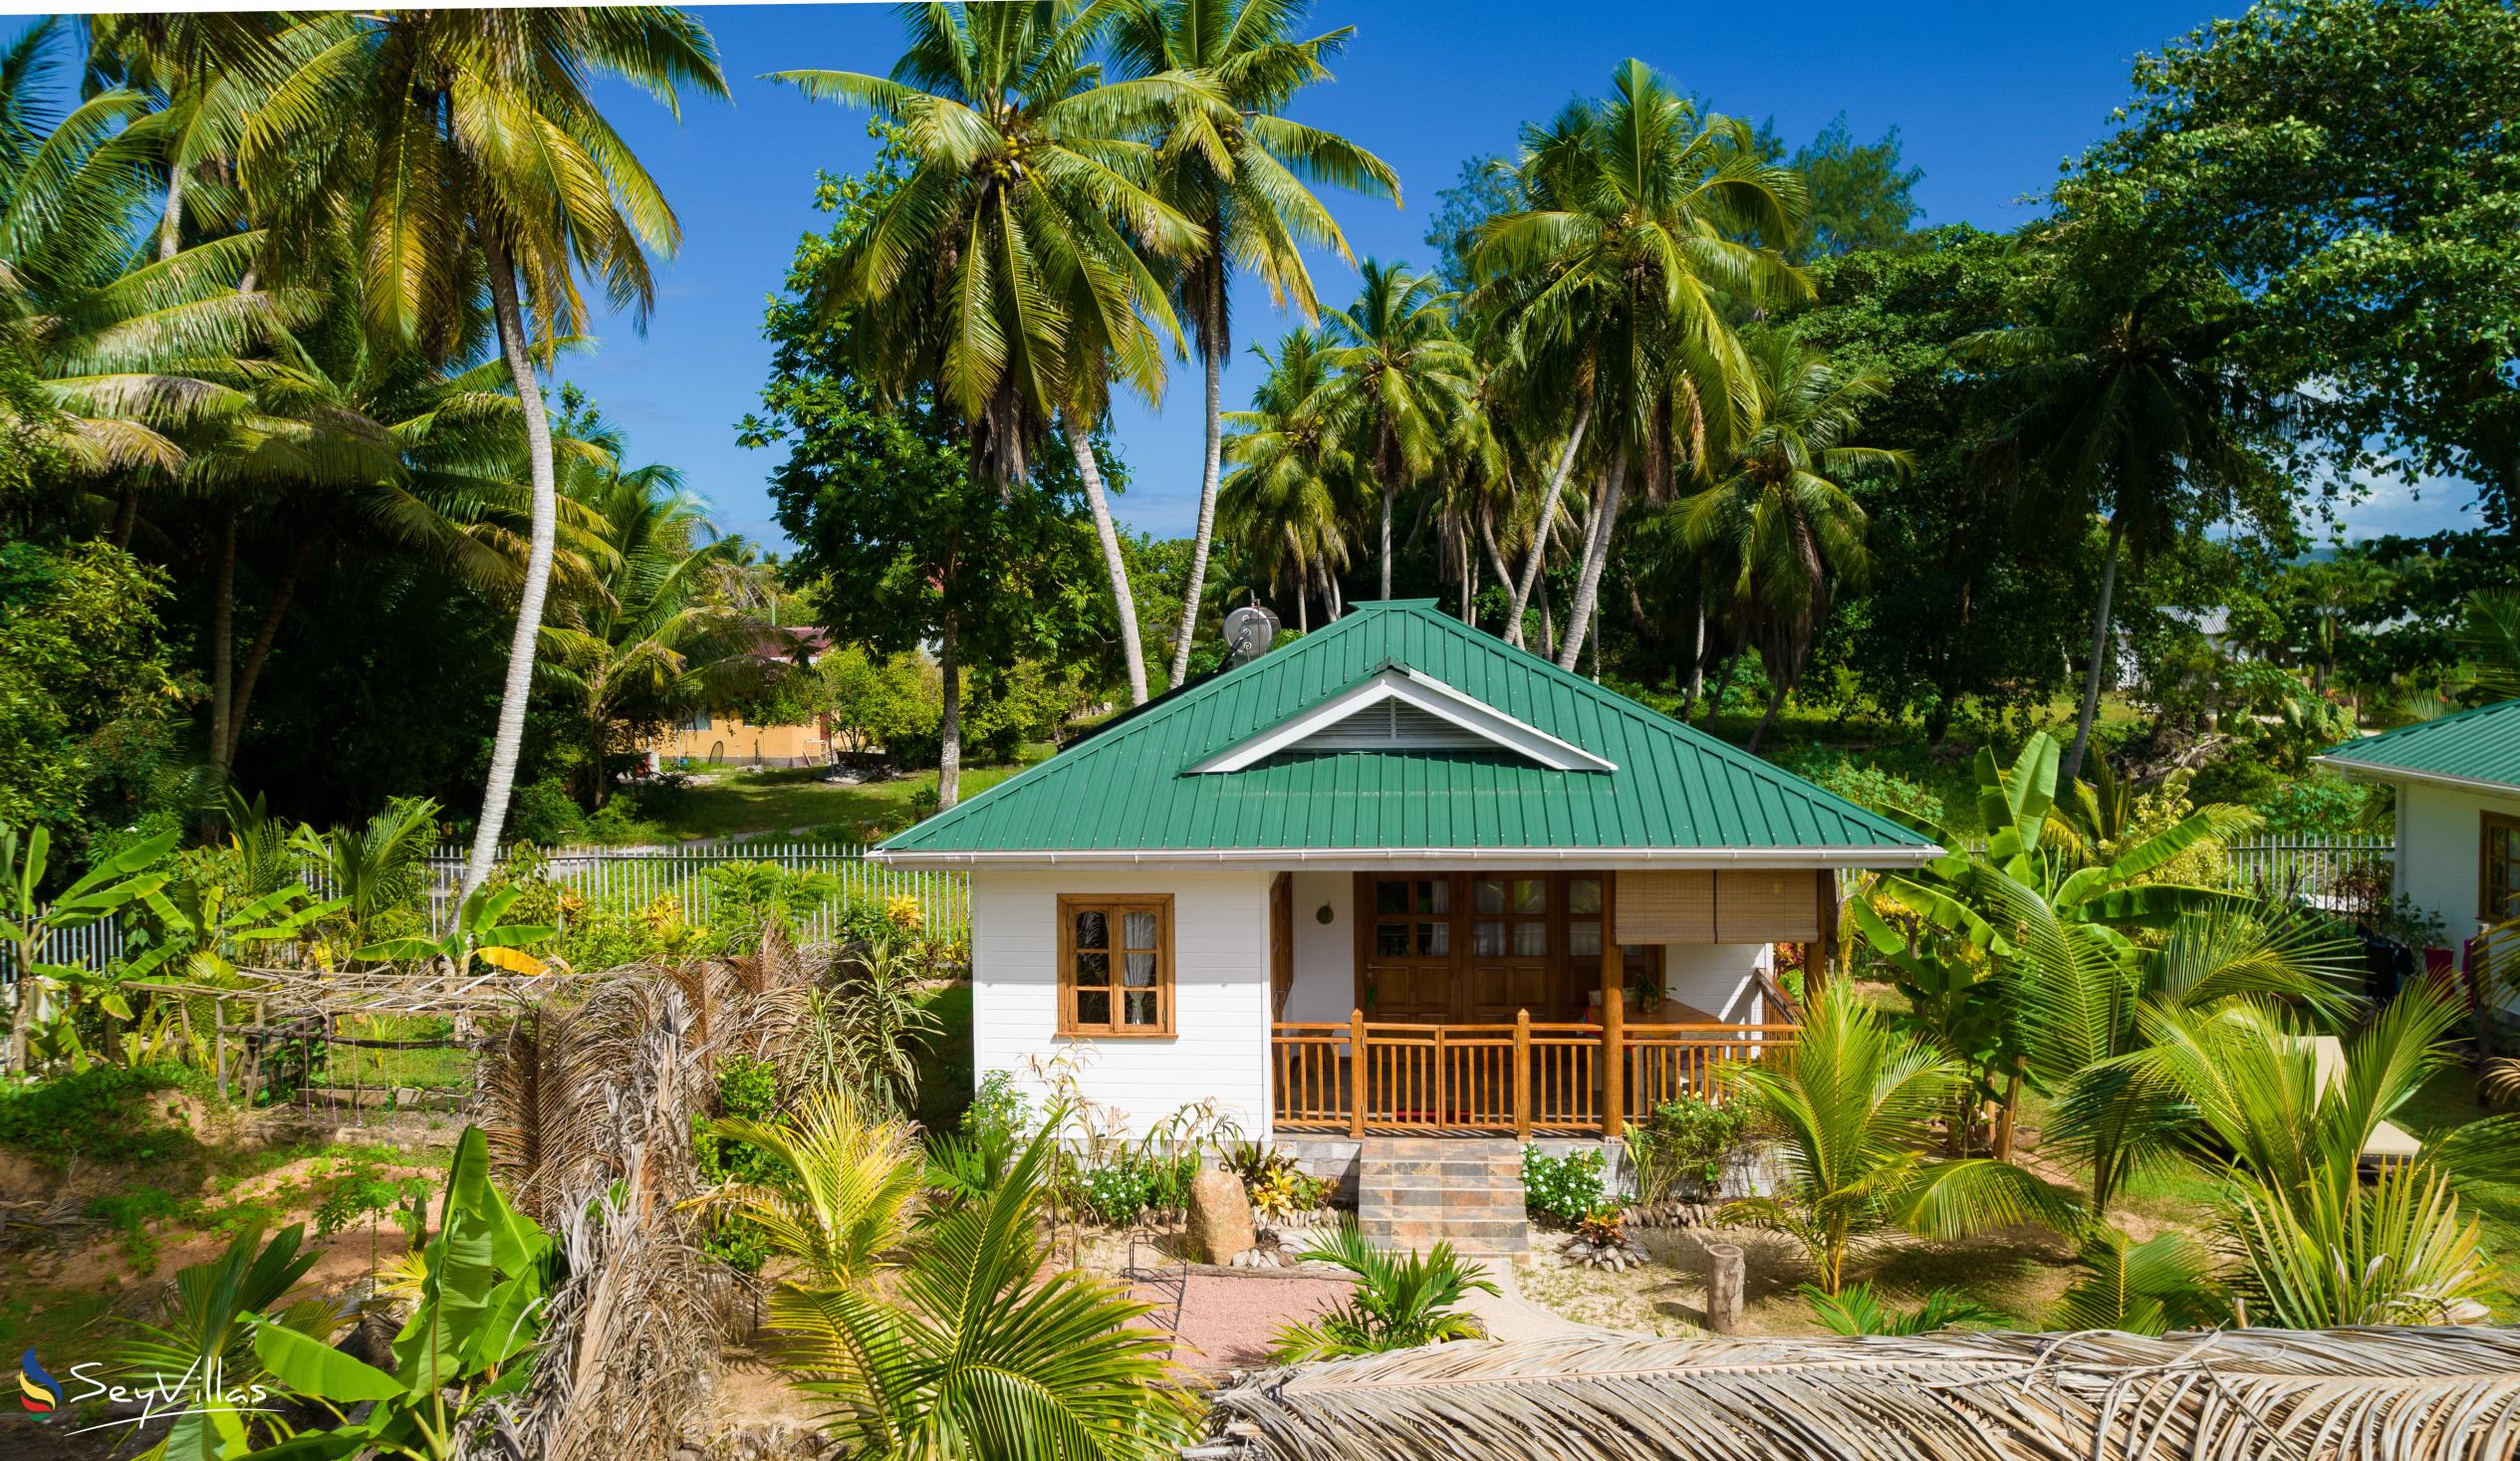 Photo 3: Coco de Mahi - Outdoor area - La Digue (Seychelles)